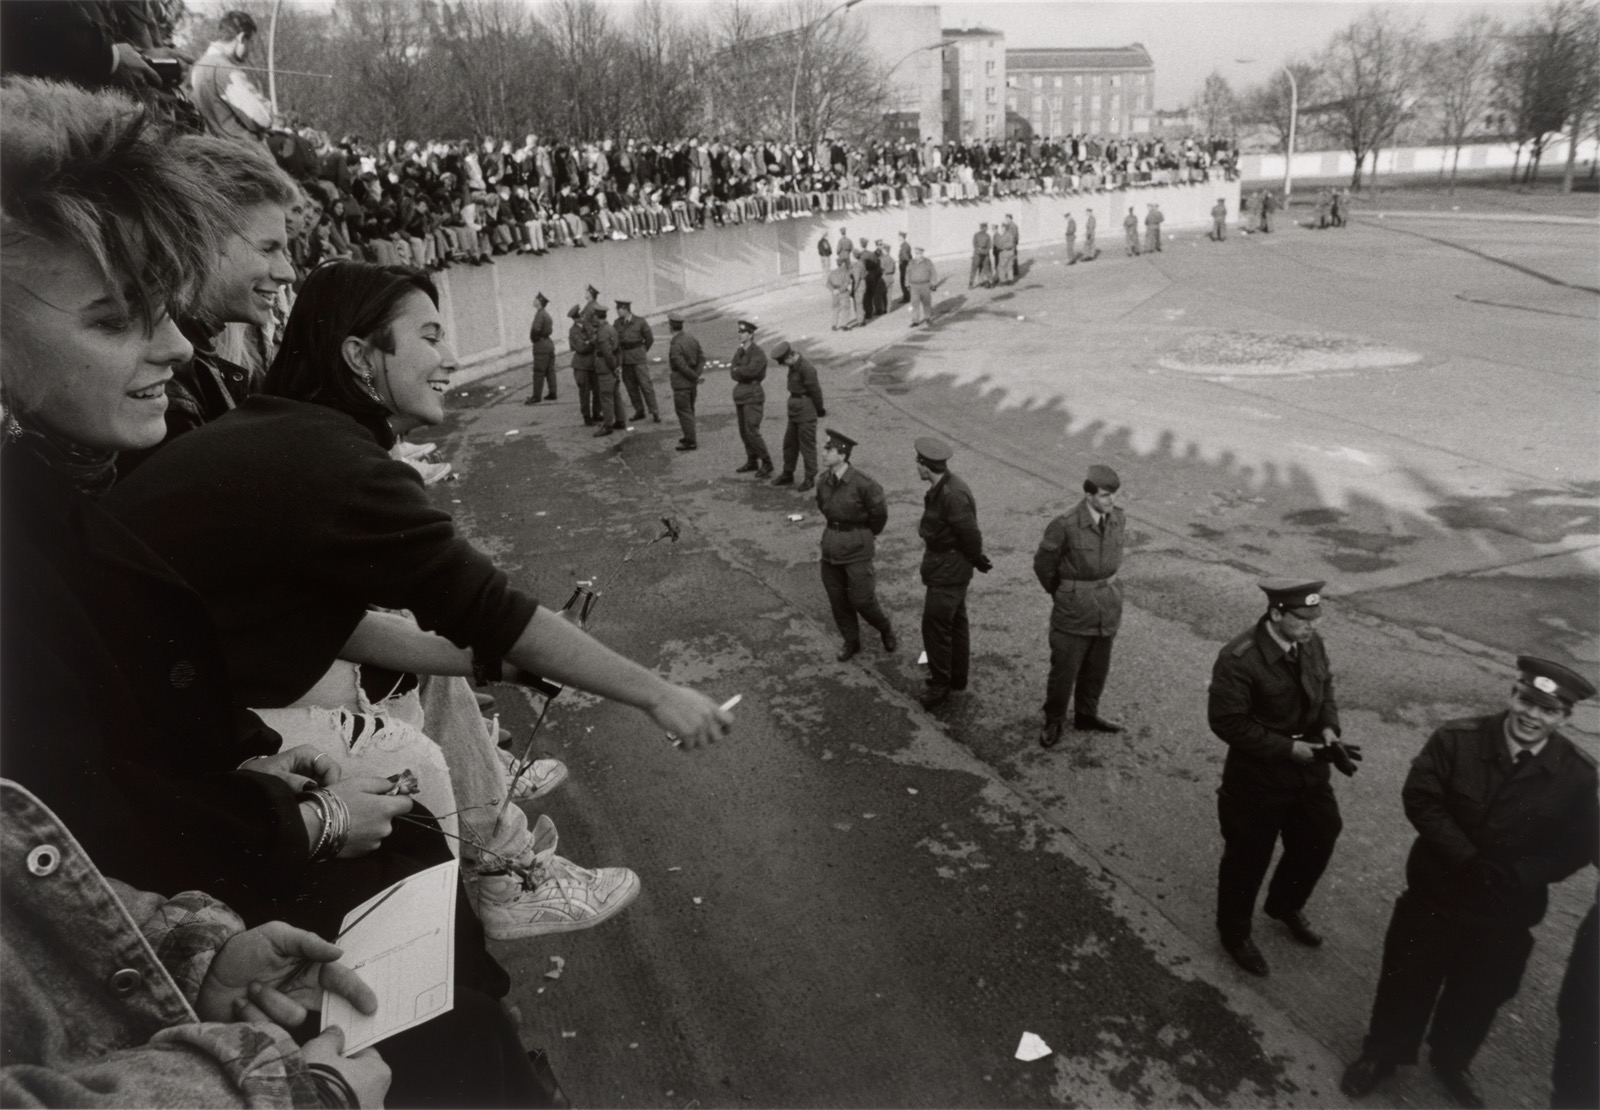 Barbara Klemm. ”Fall der Mauer, Berlin, 10. November, 1989”.